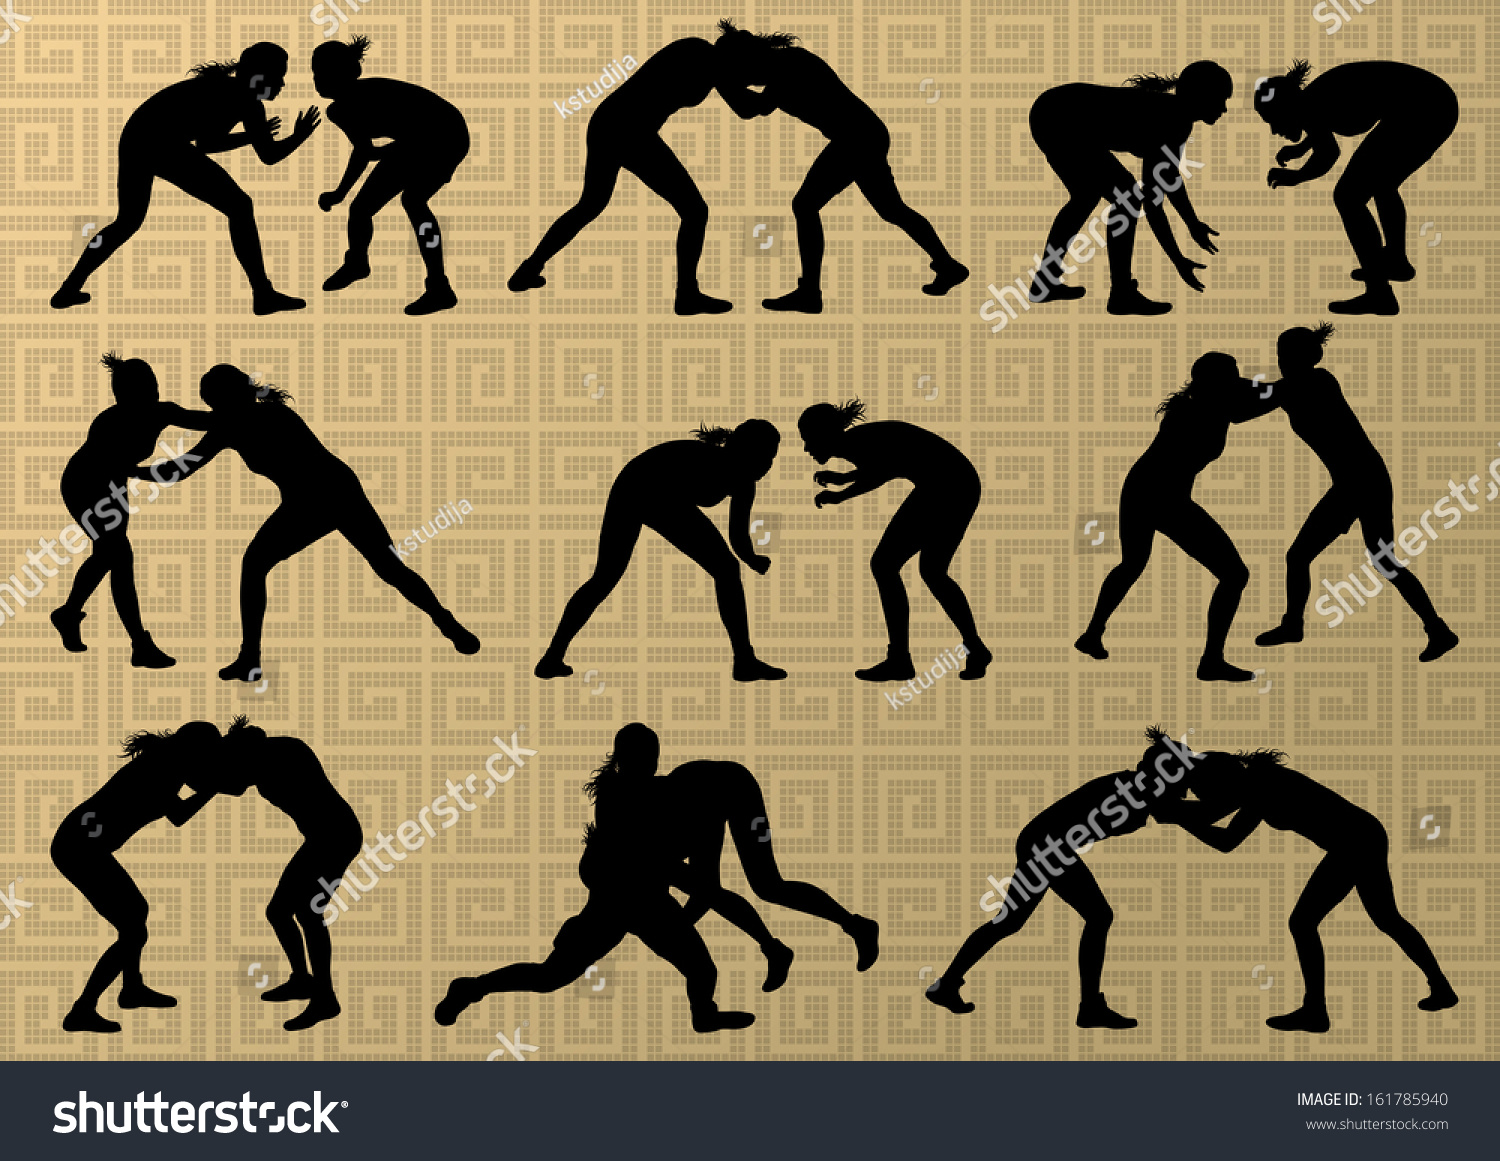 Women wrestling silhouette: изображения, стоковые фотографии и векторная гр...